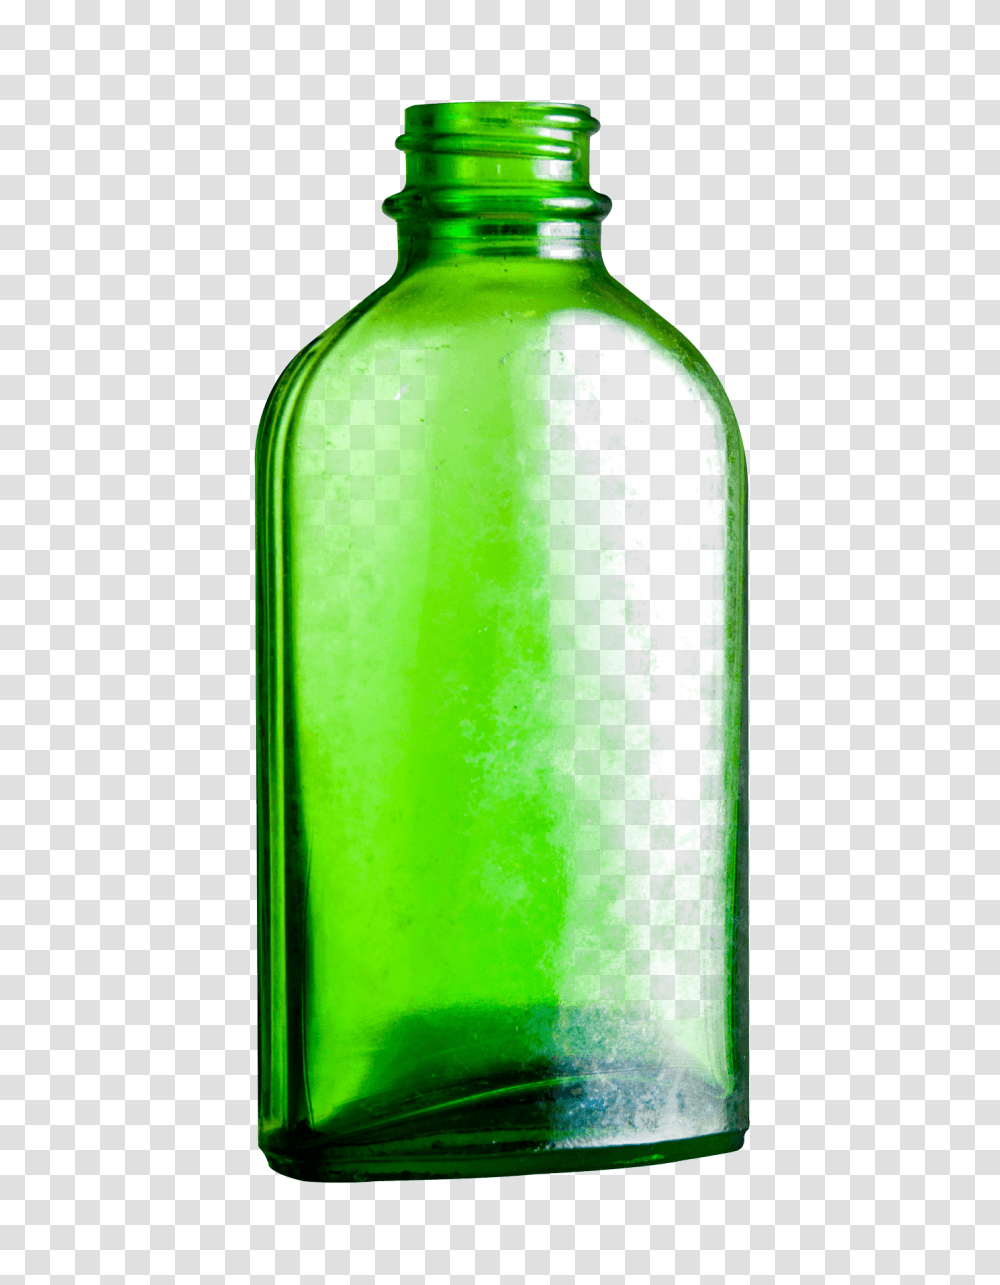 Empty Glass Bottle Image, Shaker, Pop Bottle, Beverage, Drink Transparent Png